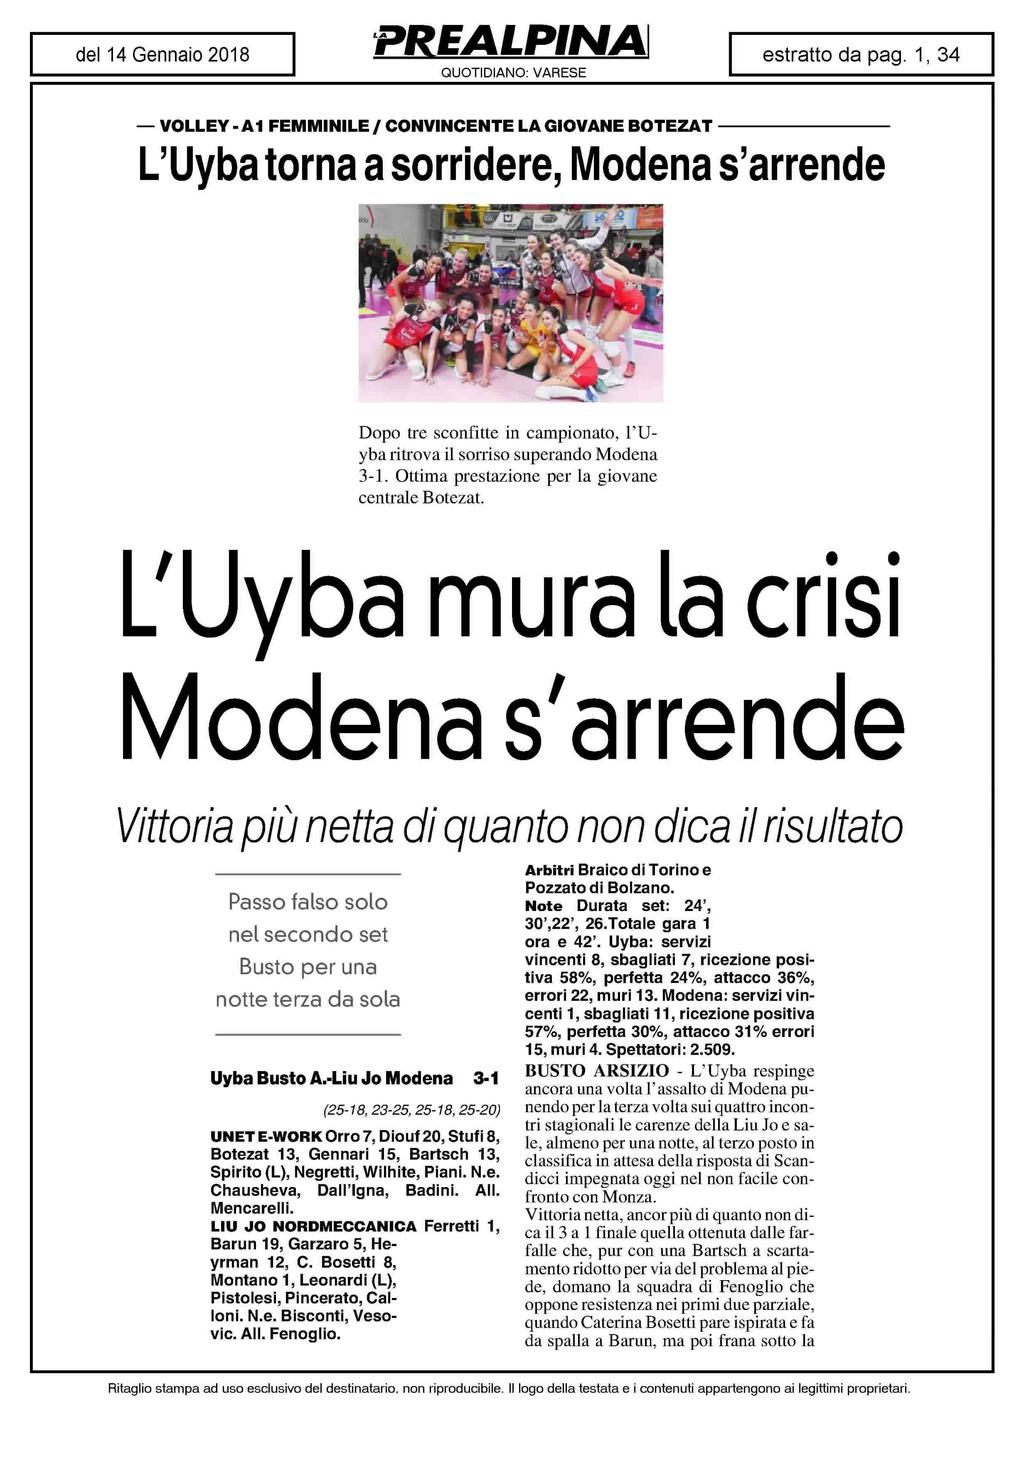 VOLLEY - Al FEMMINILE / CONVINCENTE LA GIOVANE BOTEZAT L'Uyba torna a sorridere, Modena s'arrende Dopo tre sconfitte in campionato, l'uyba ritrova il sorriso superando Modena 3-1.